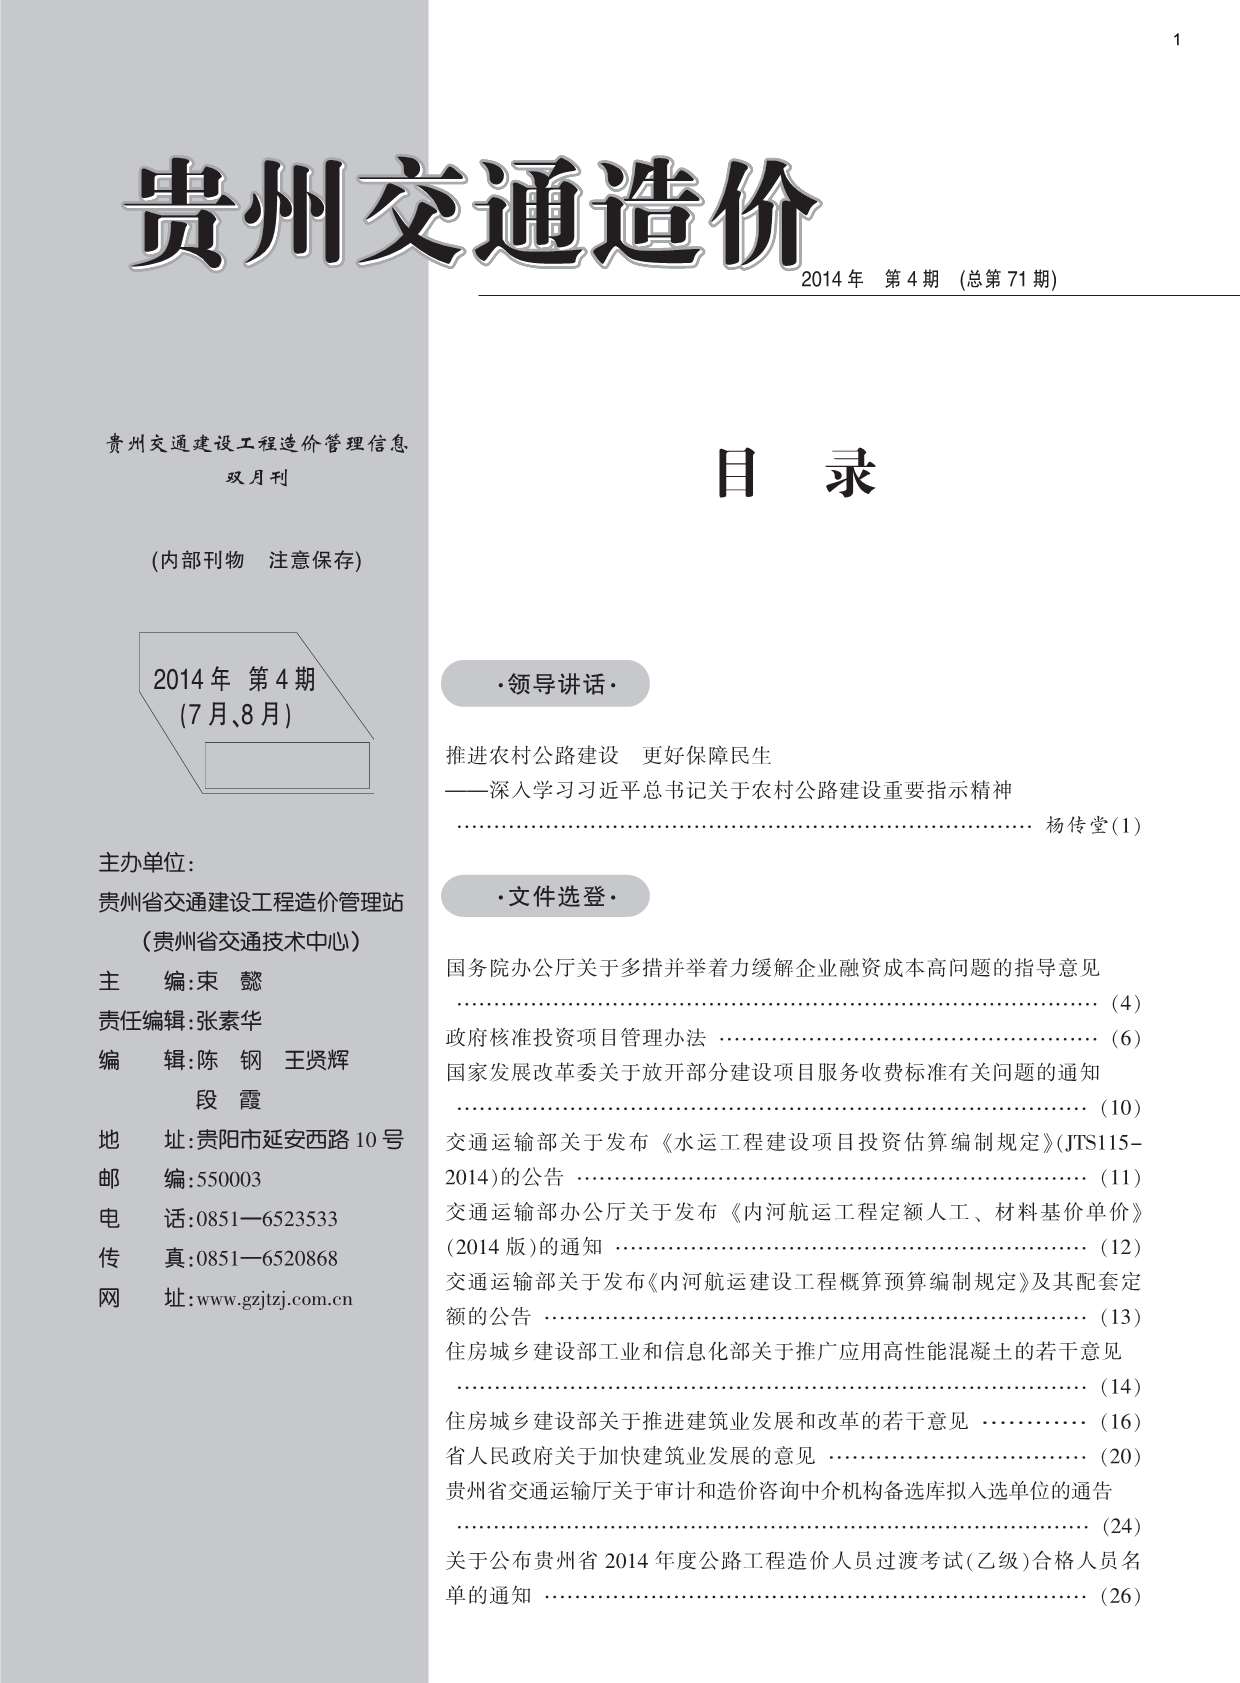 贵州省2014年4月交通工程信息价